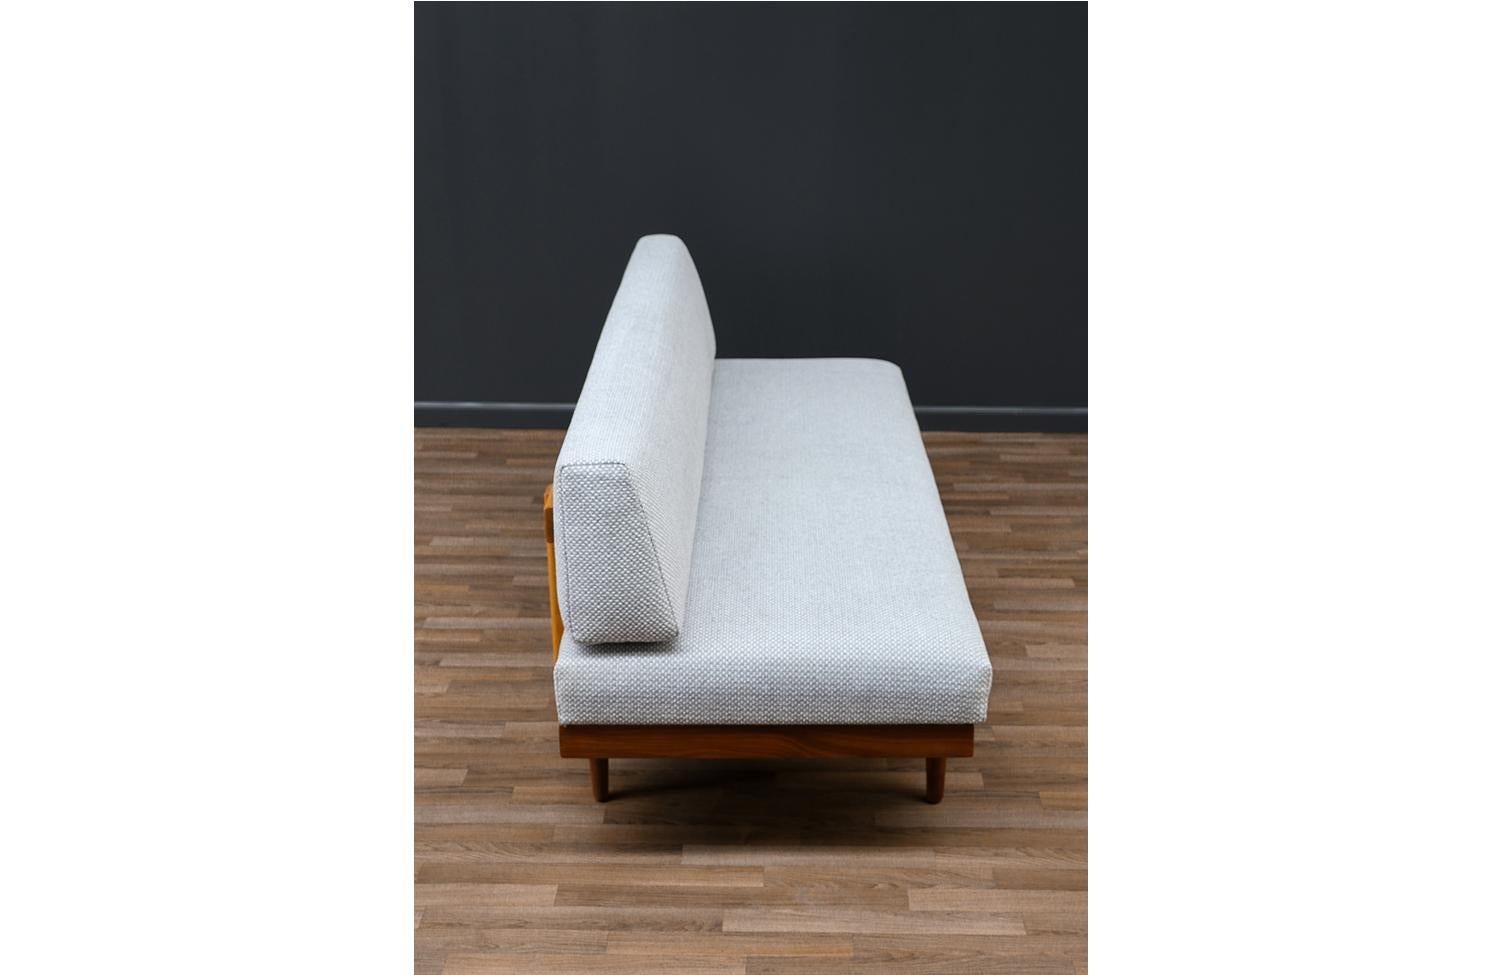 Expertly Restored - Edvard Kindt-Larsen Teak Daybed Sofa for Gustav Bahus For Sale 1